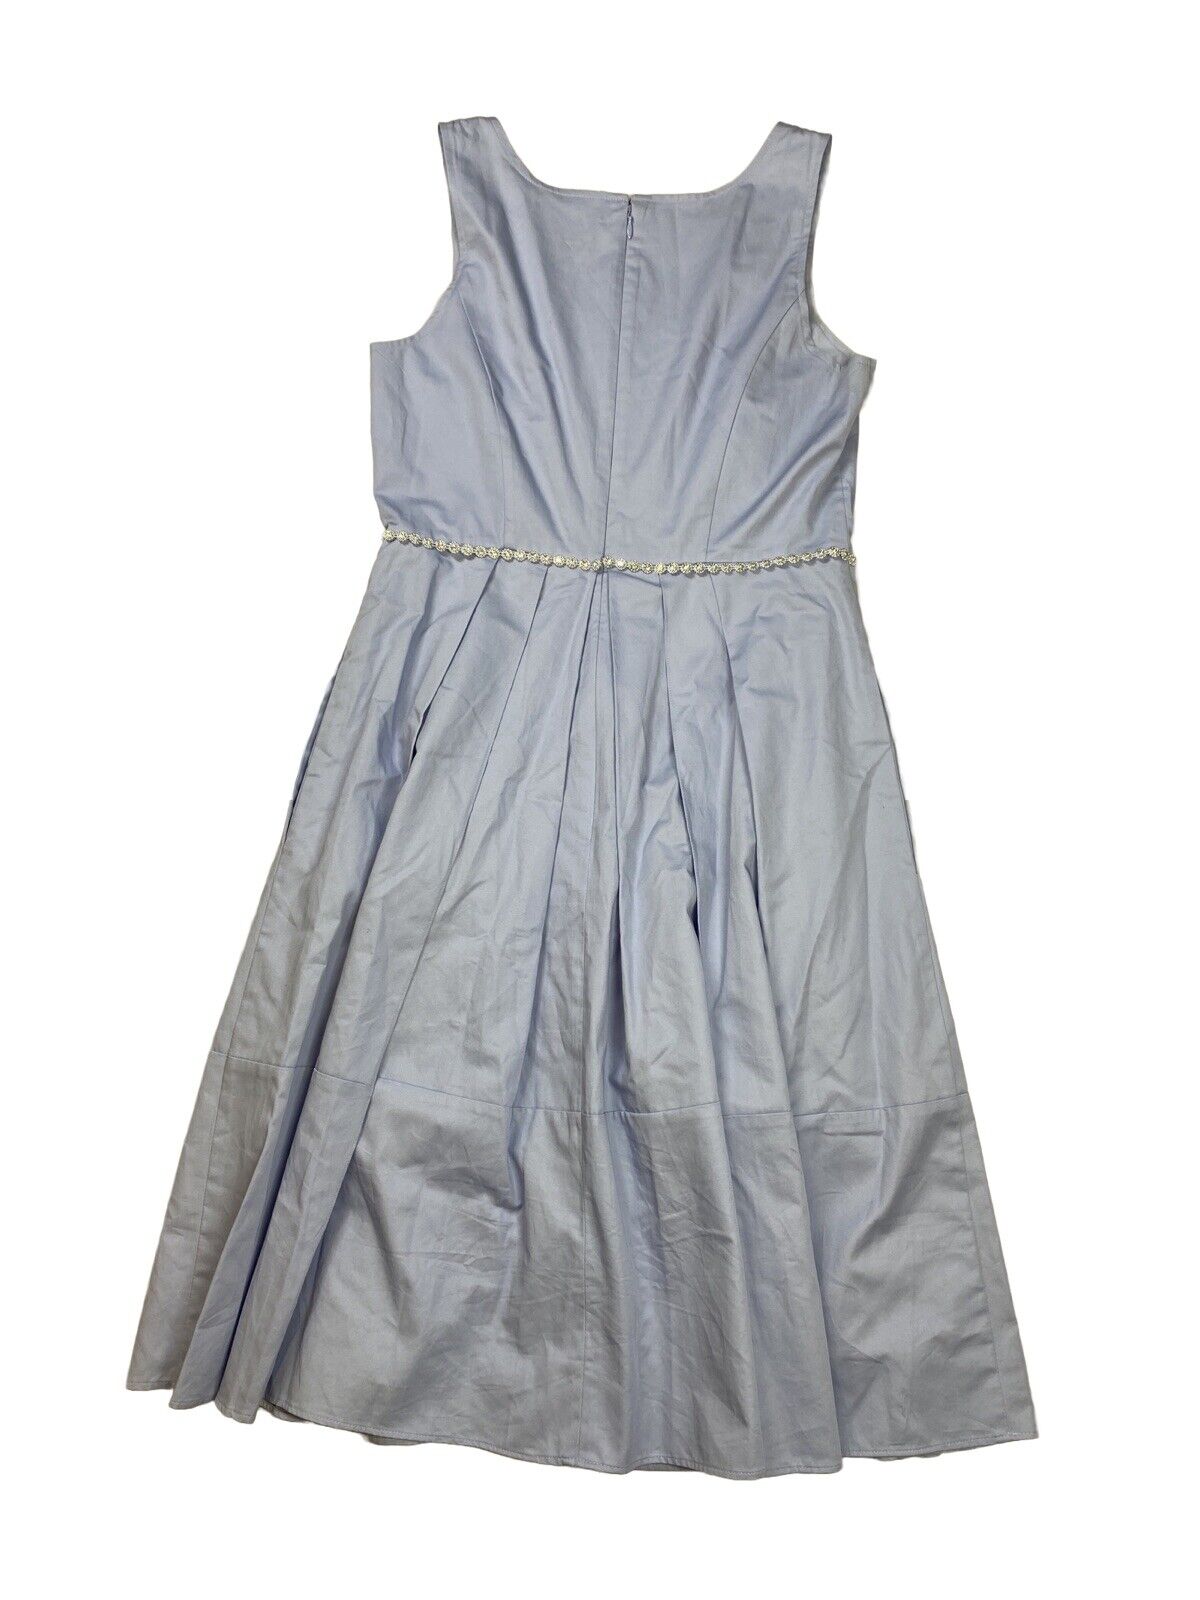 Ann Taylor Women's Light Blue Sleeveless Belted A-Line Dress - Petite 2P